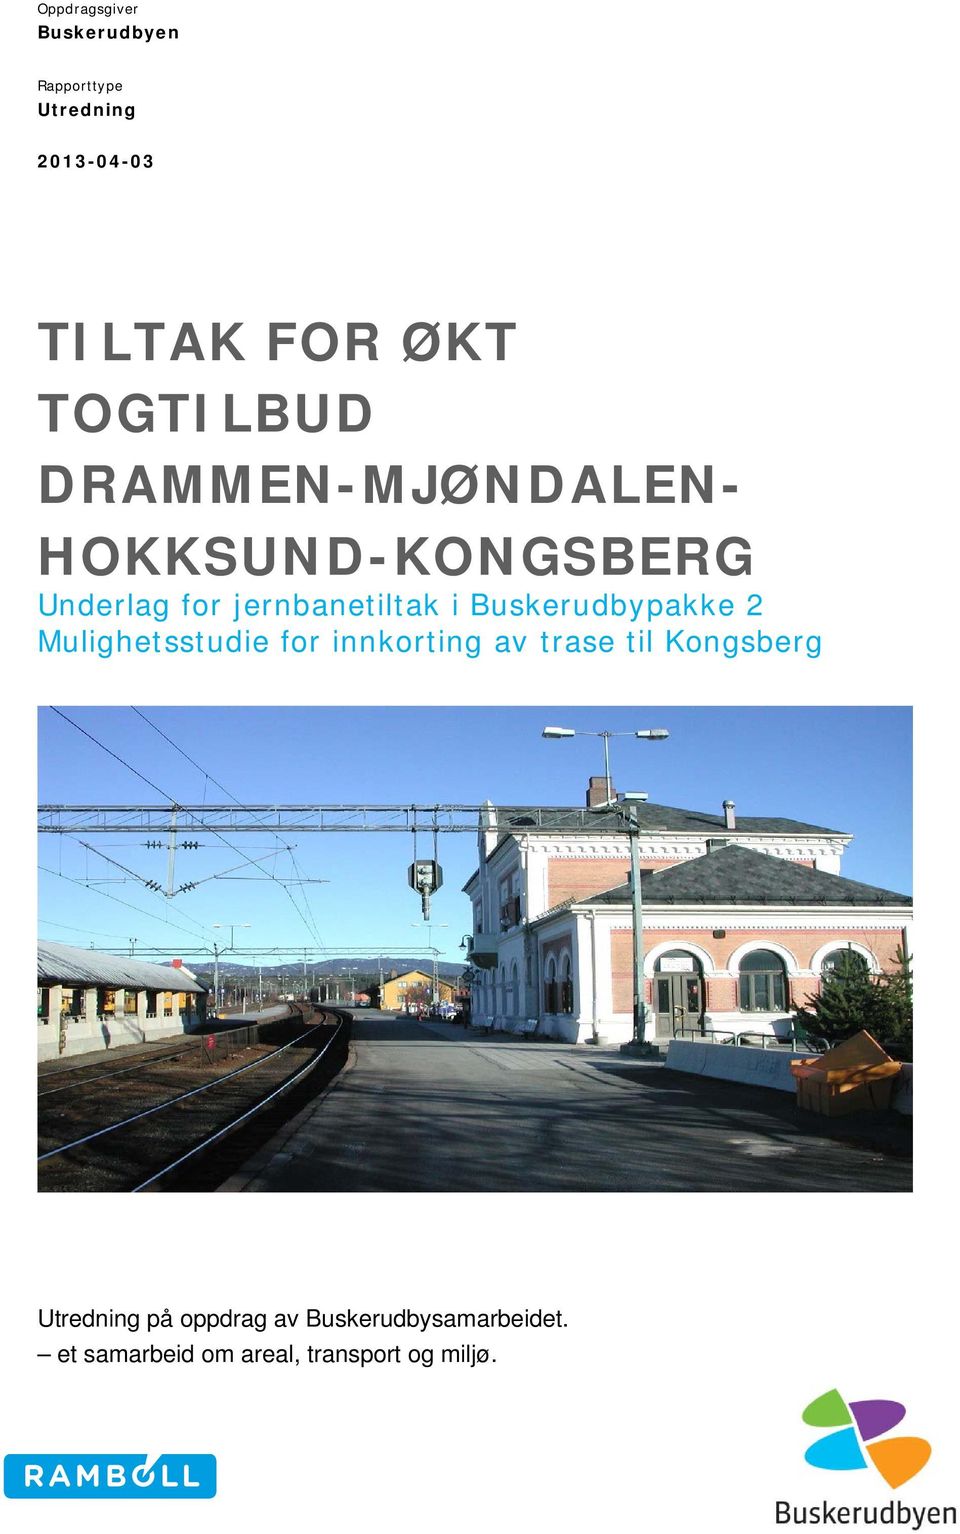 Buskerudbypakke 2 Mulighetsstudie for innkorting av trase til Kongsberg